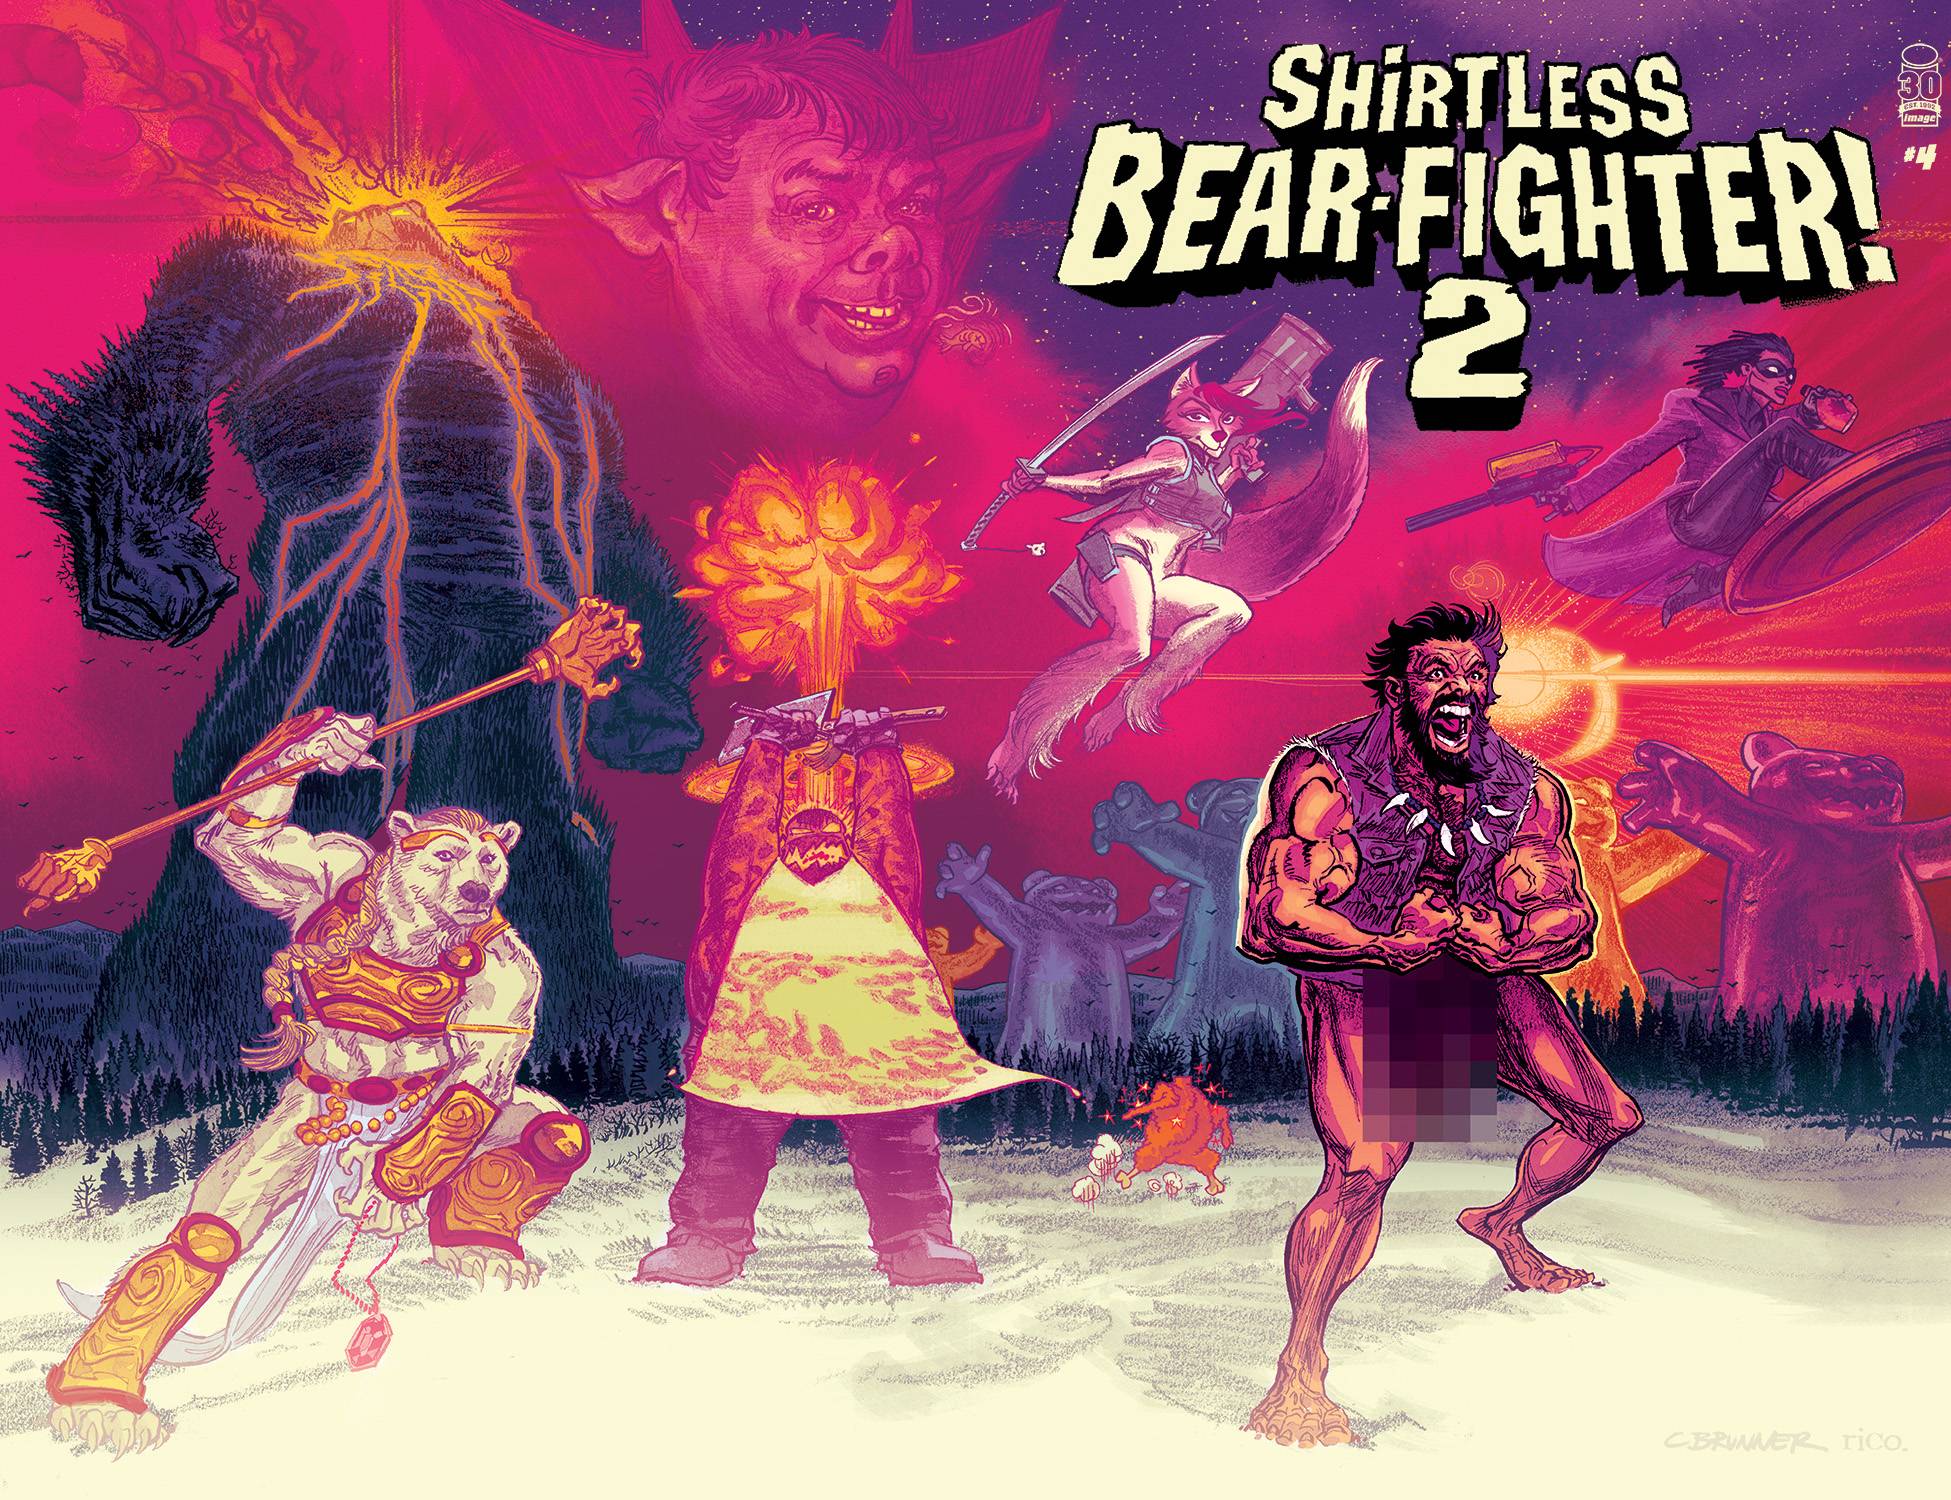 SHIRTLESS BEAR-FIGHTER 2 #4 (OF 7) CVR B BRUNNER